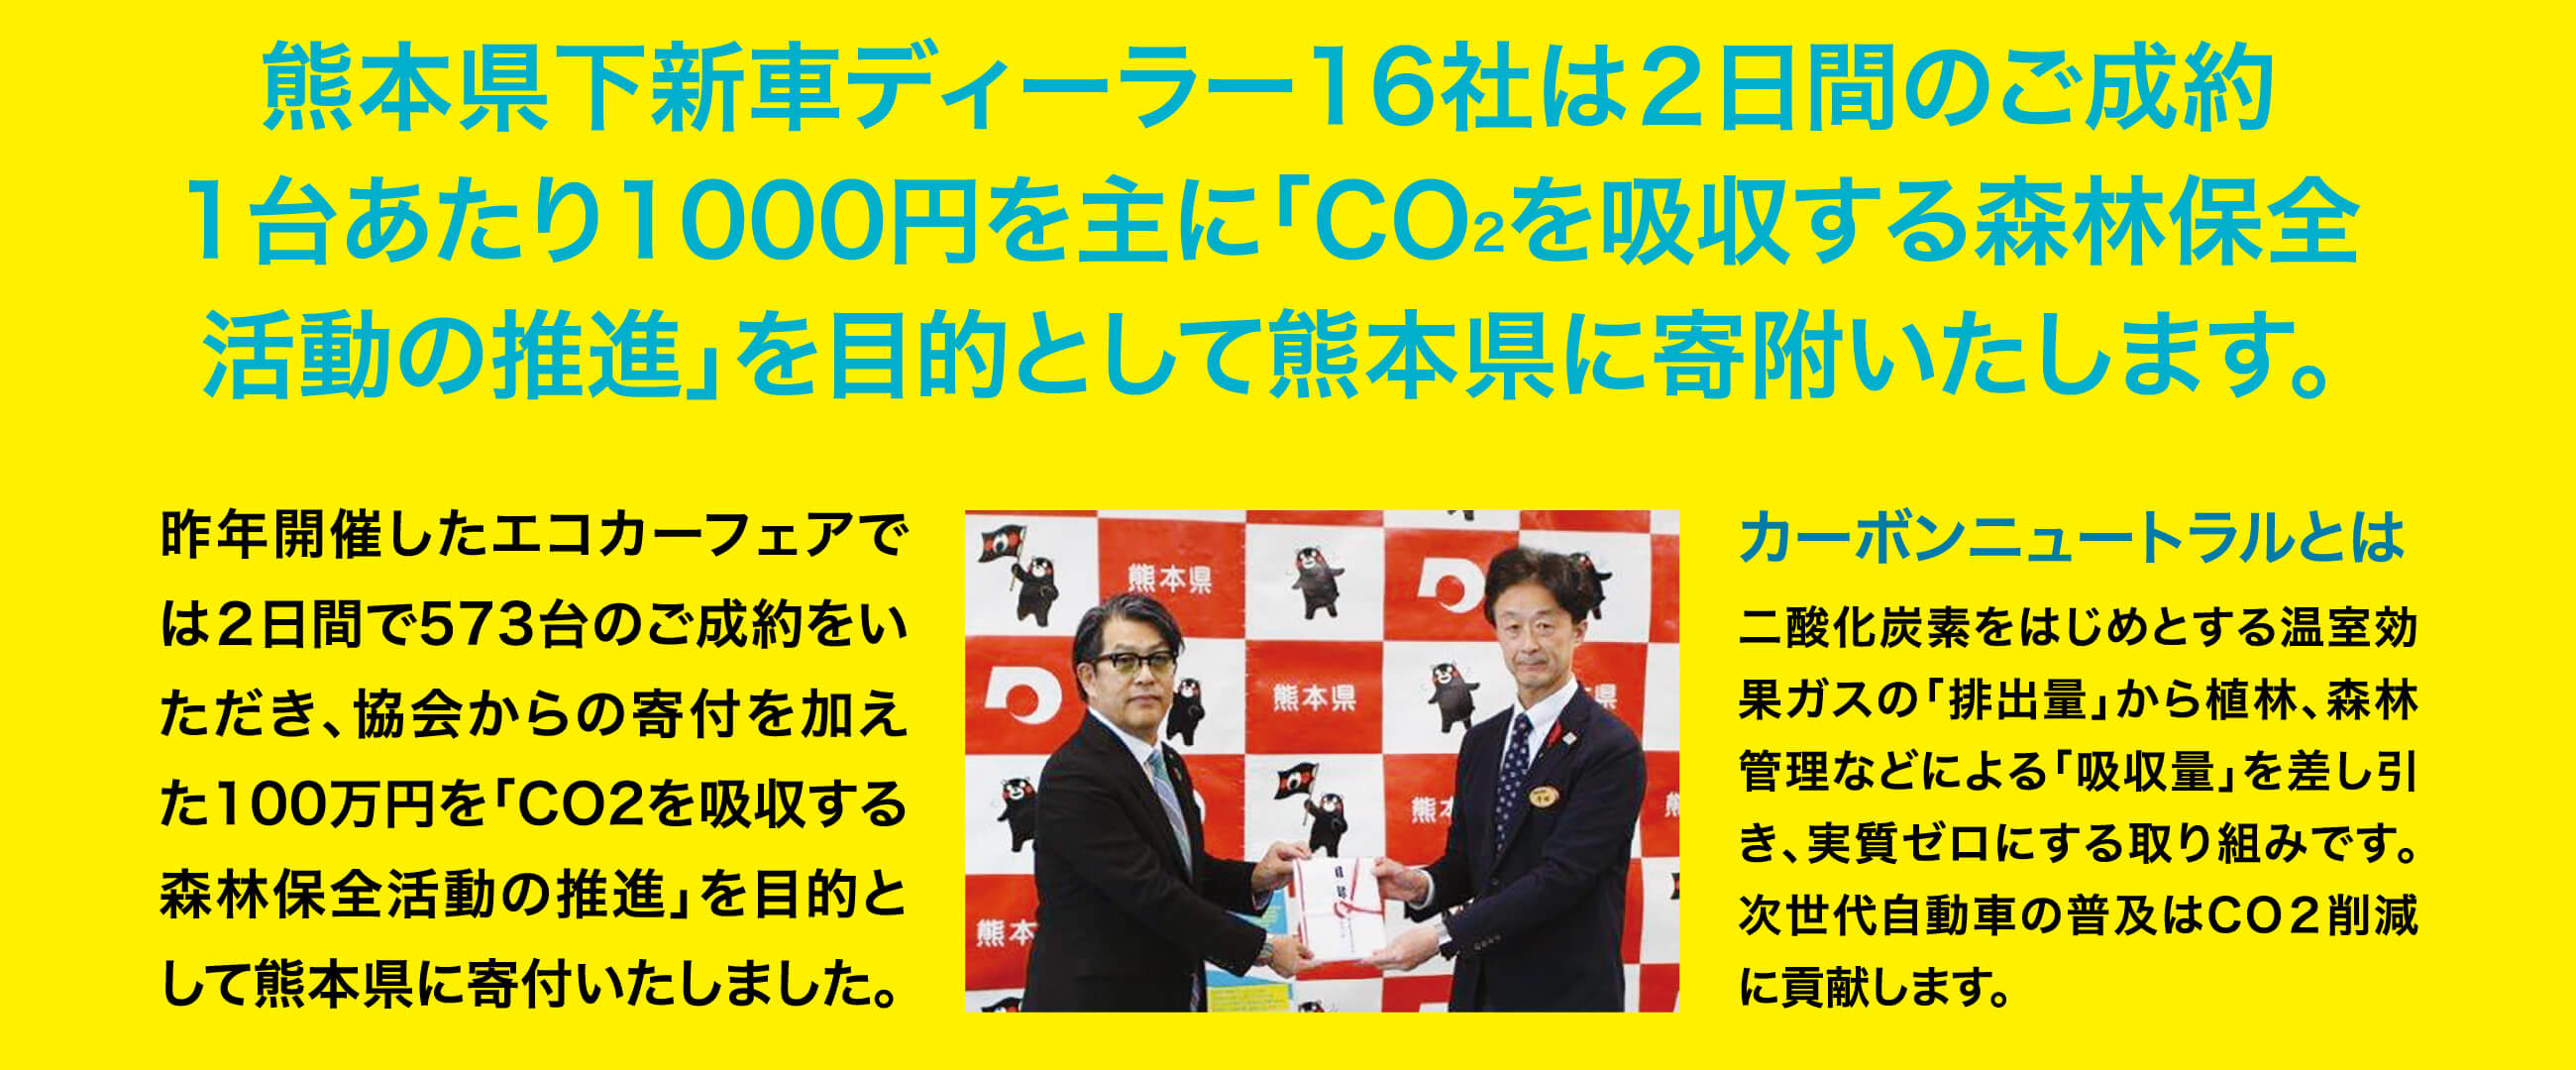 熊本県下新車ディーラー16社は2日間のご成約あたり1000円を主に「CO2を吸収する森林保全活動の推進」を目的として熊本県に寄附いたします。